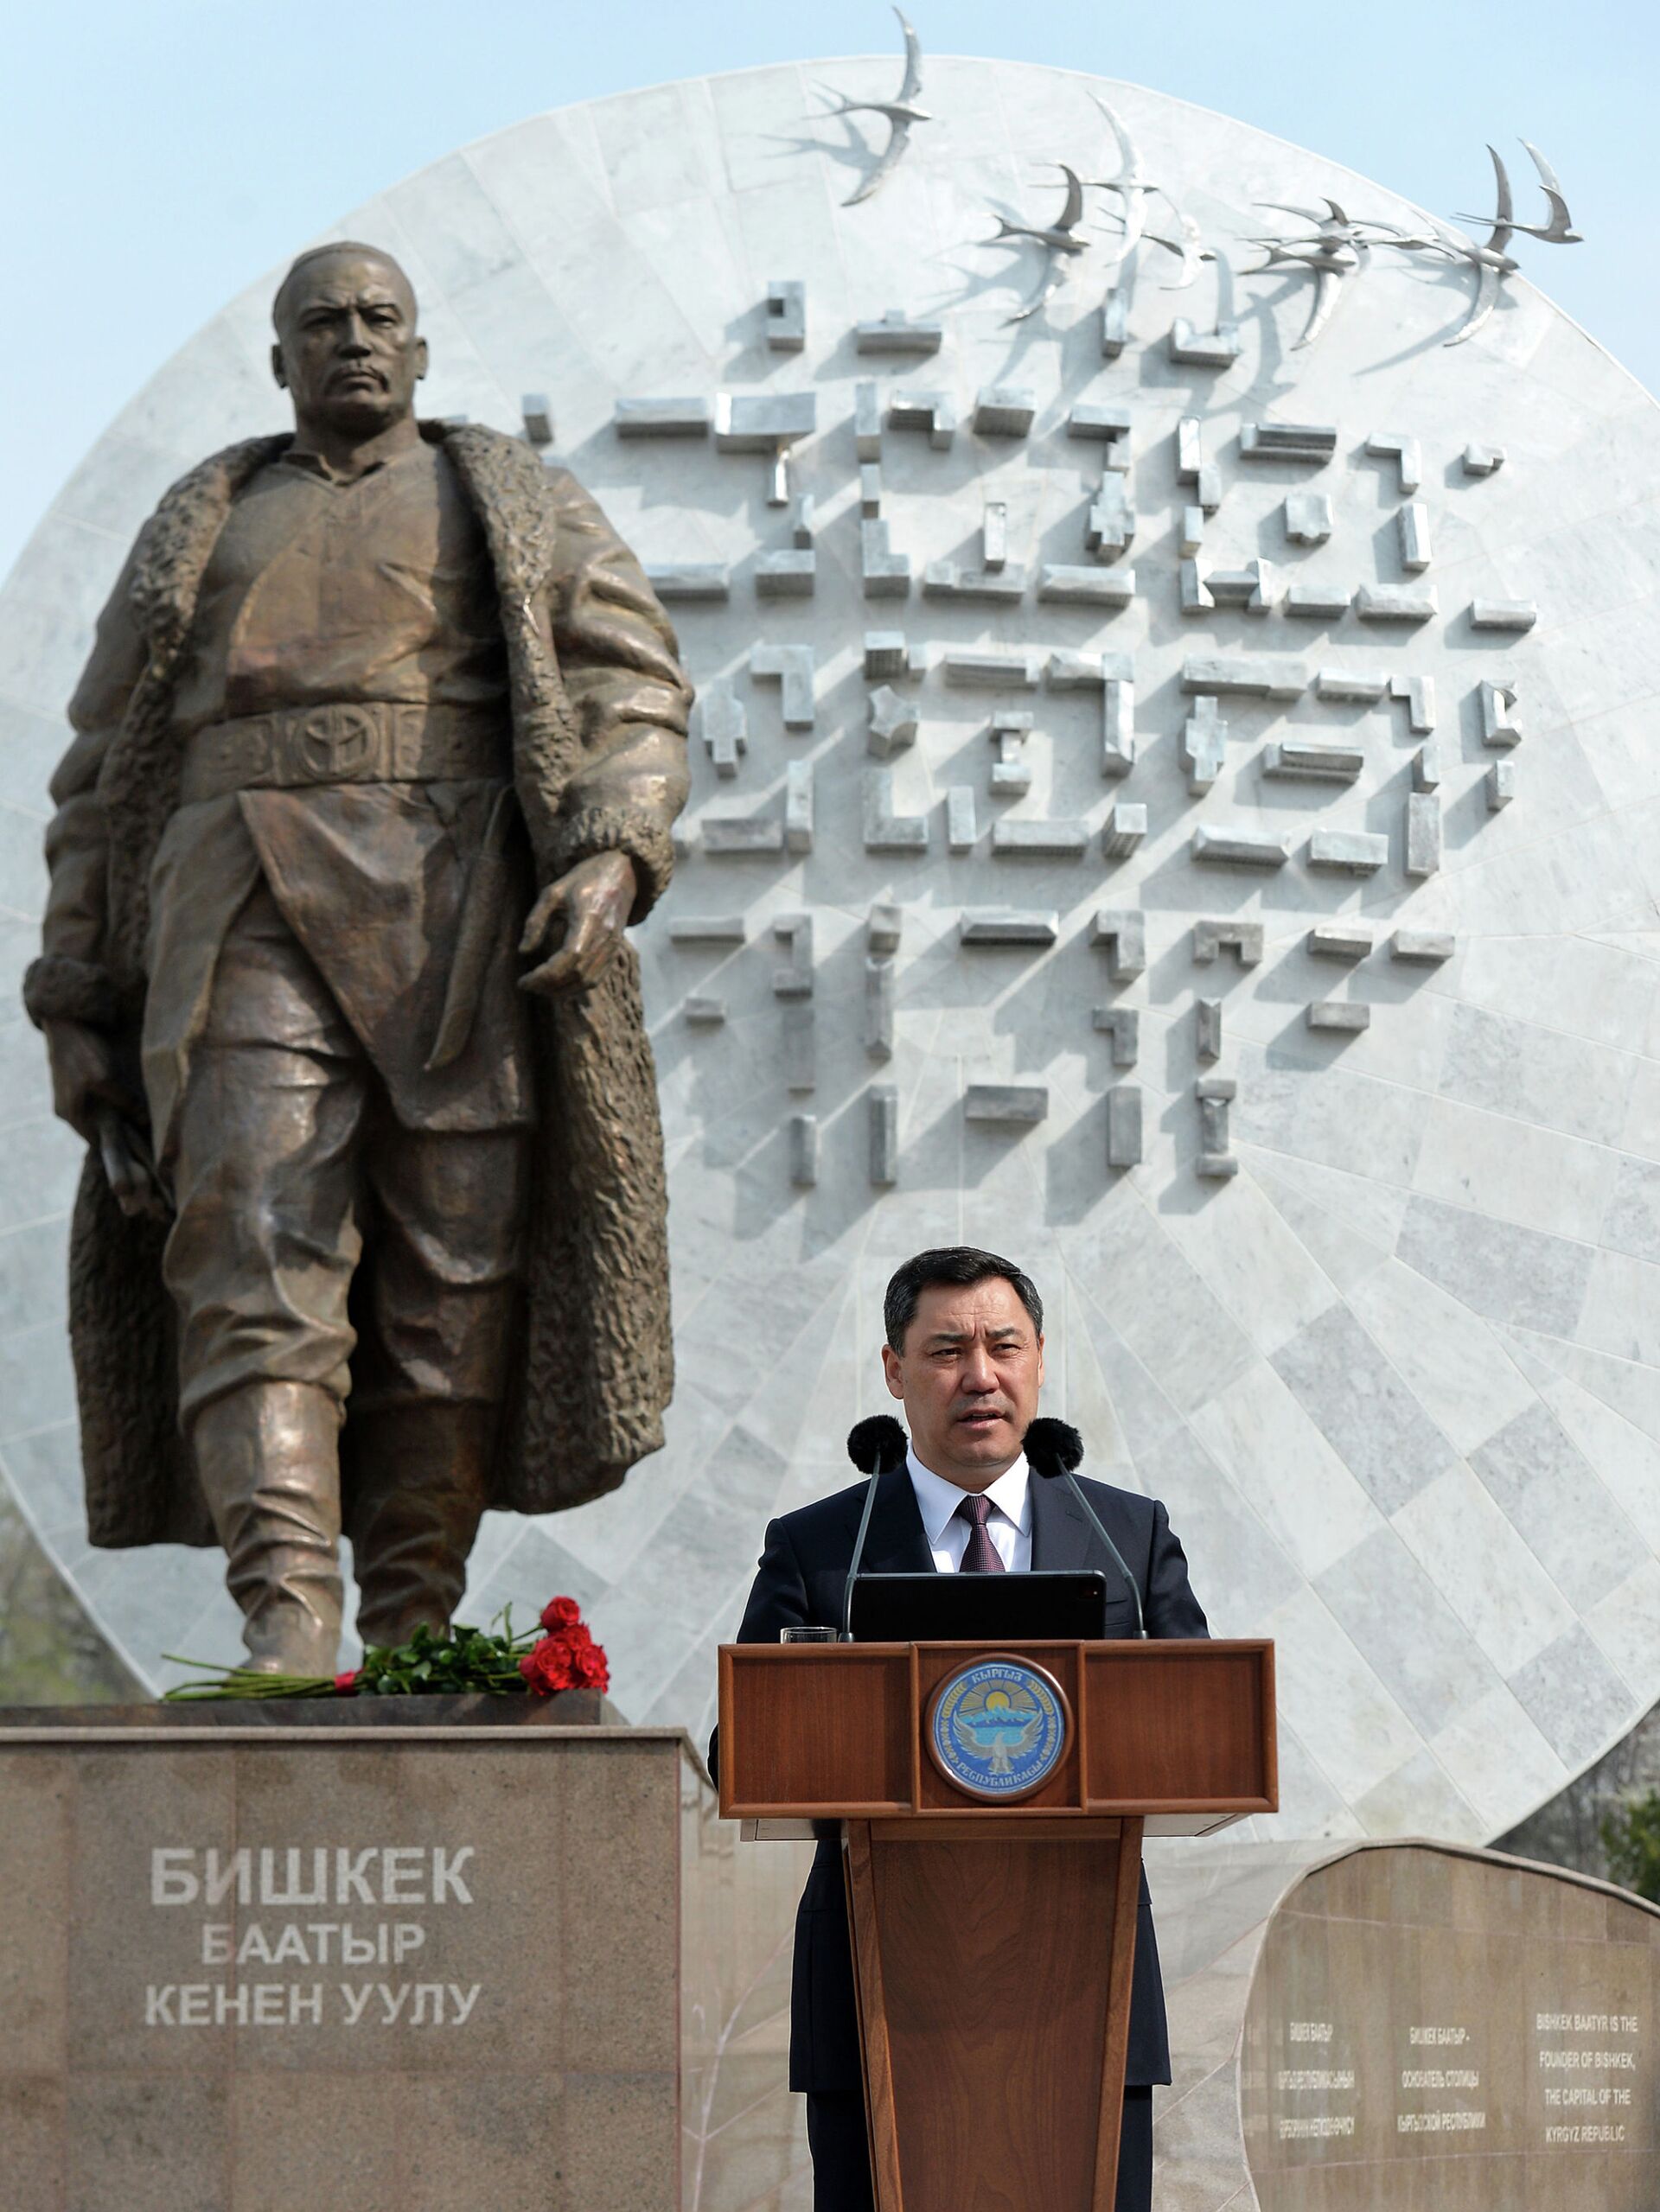 В столице открыли памятник Бишкек баатыру — что о нем сказал Садыр Жапаров - Sputnik Кыргызстан, 1920, 14.04.2021